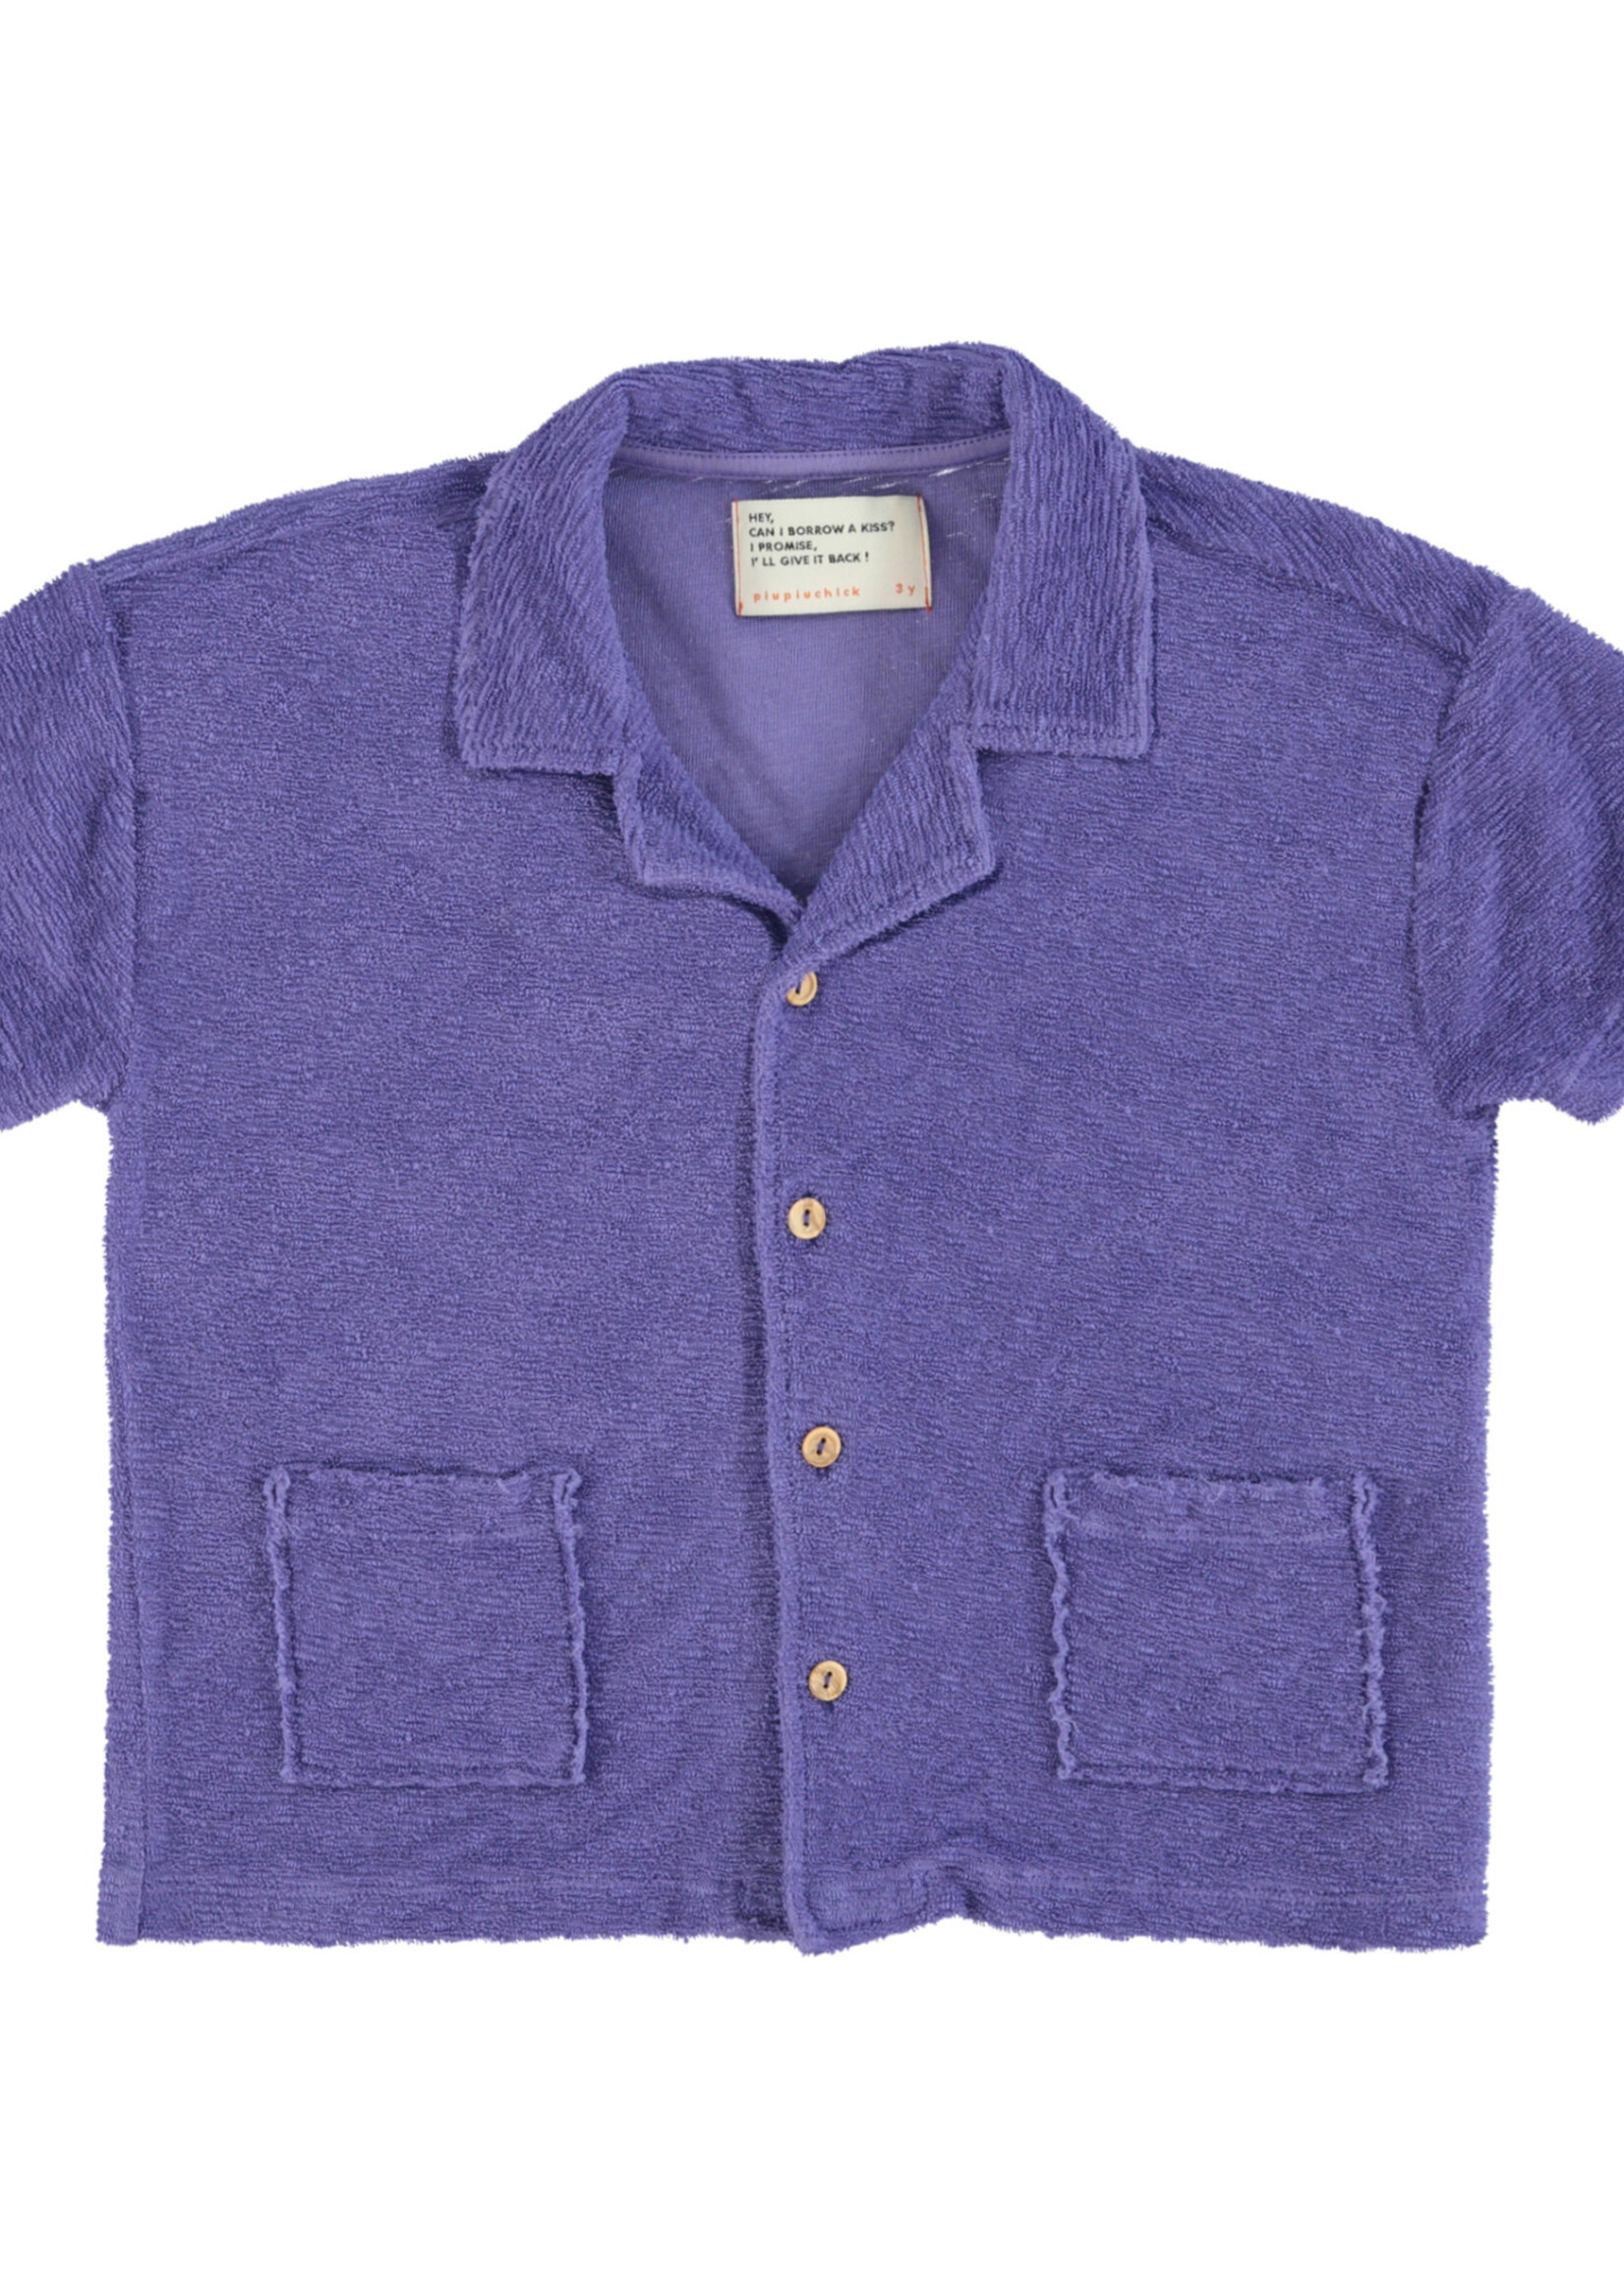 Piupiuchick Hawaiian shirt purple - Piupiuchick